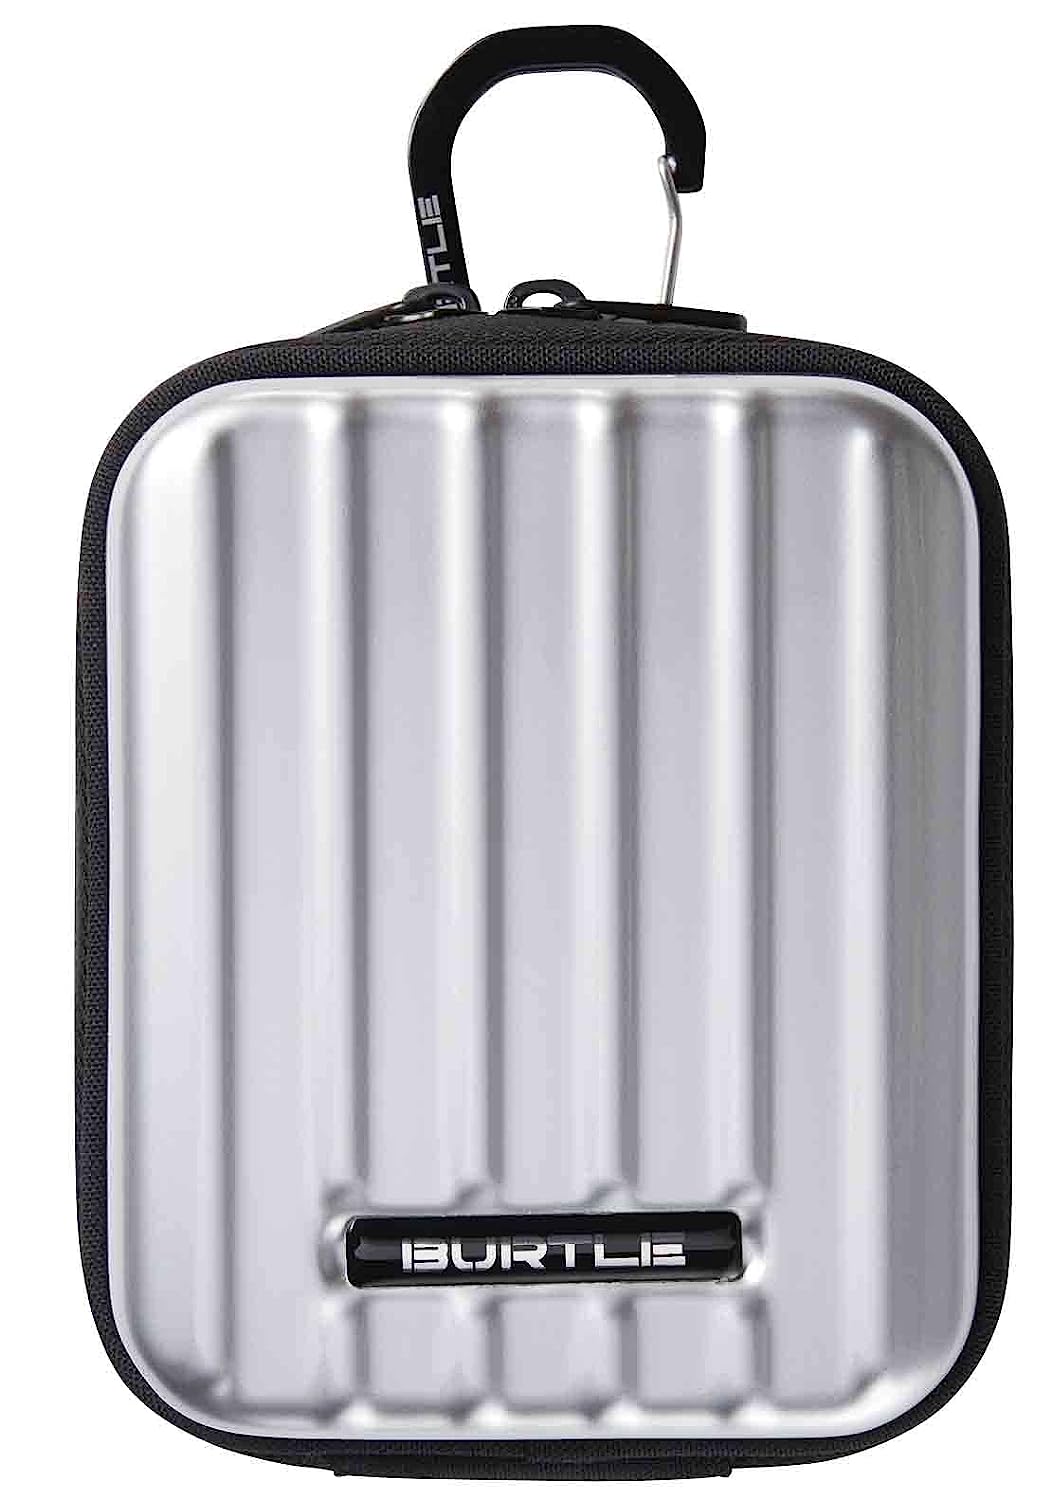 バートル(BURTLE) AC340 モバイルバッテリーデバイスバッグ バッテリーケースのみ 95 F メタリックシルバー エアクラフト